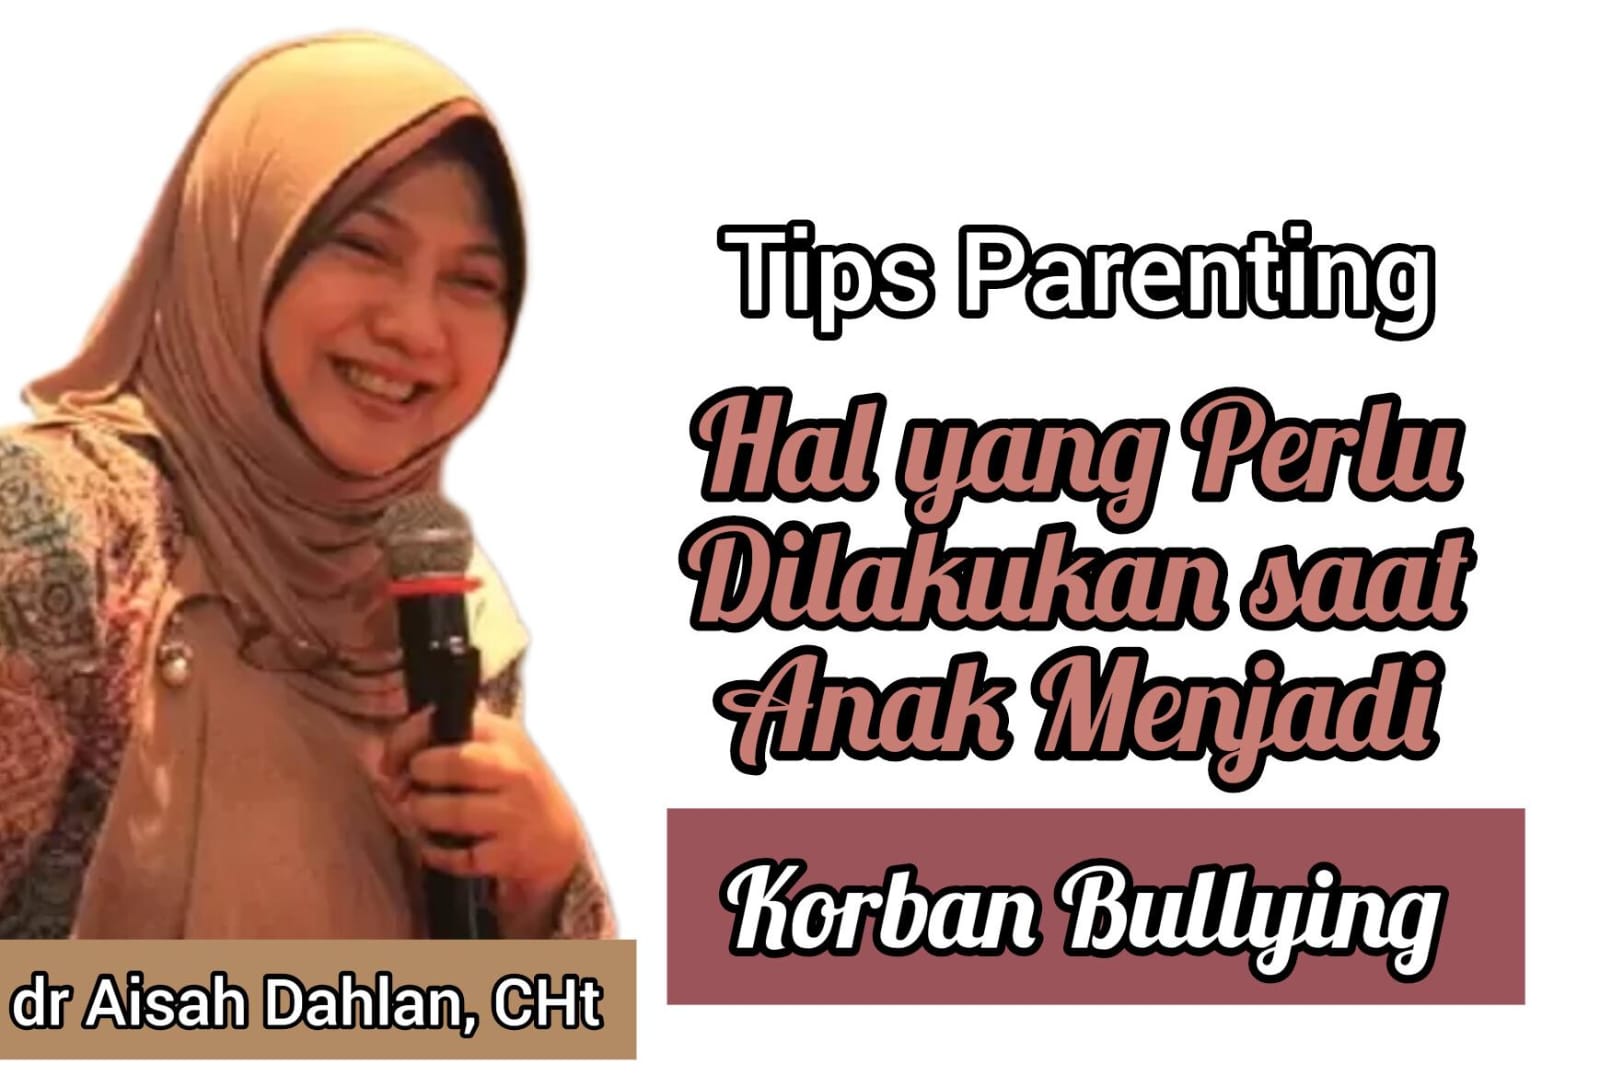 Tips Parenting dr Aisah Dahlan, Ini Hal yang Perlu Dilakukan saat Anak Menjadi Korban Bullying